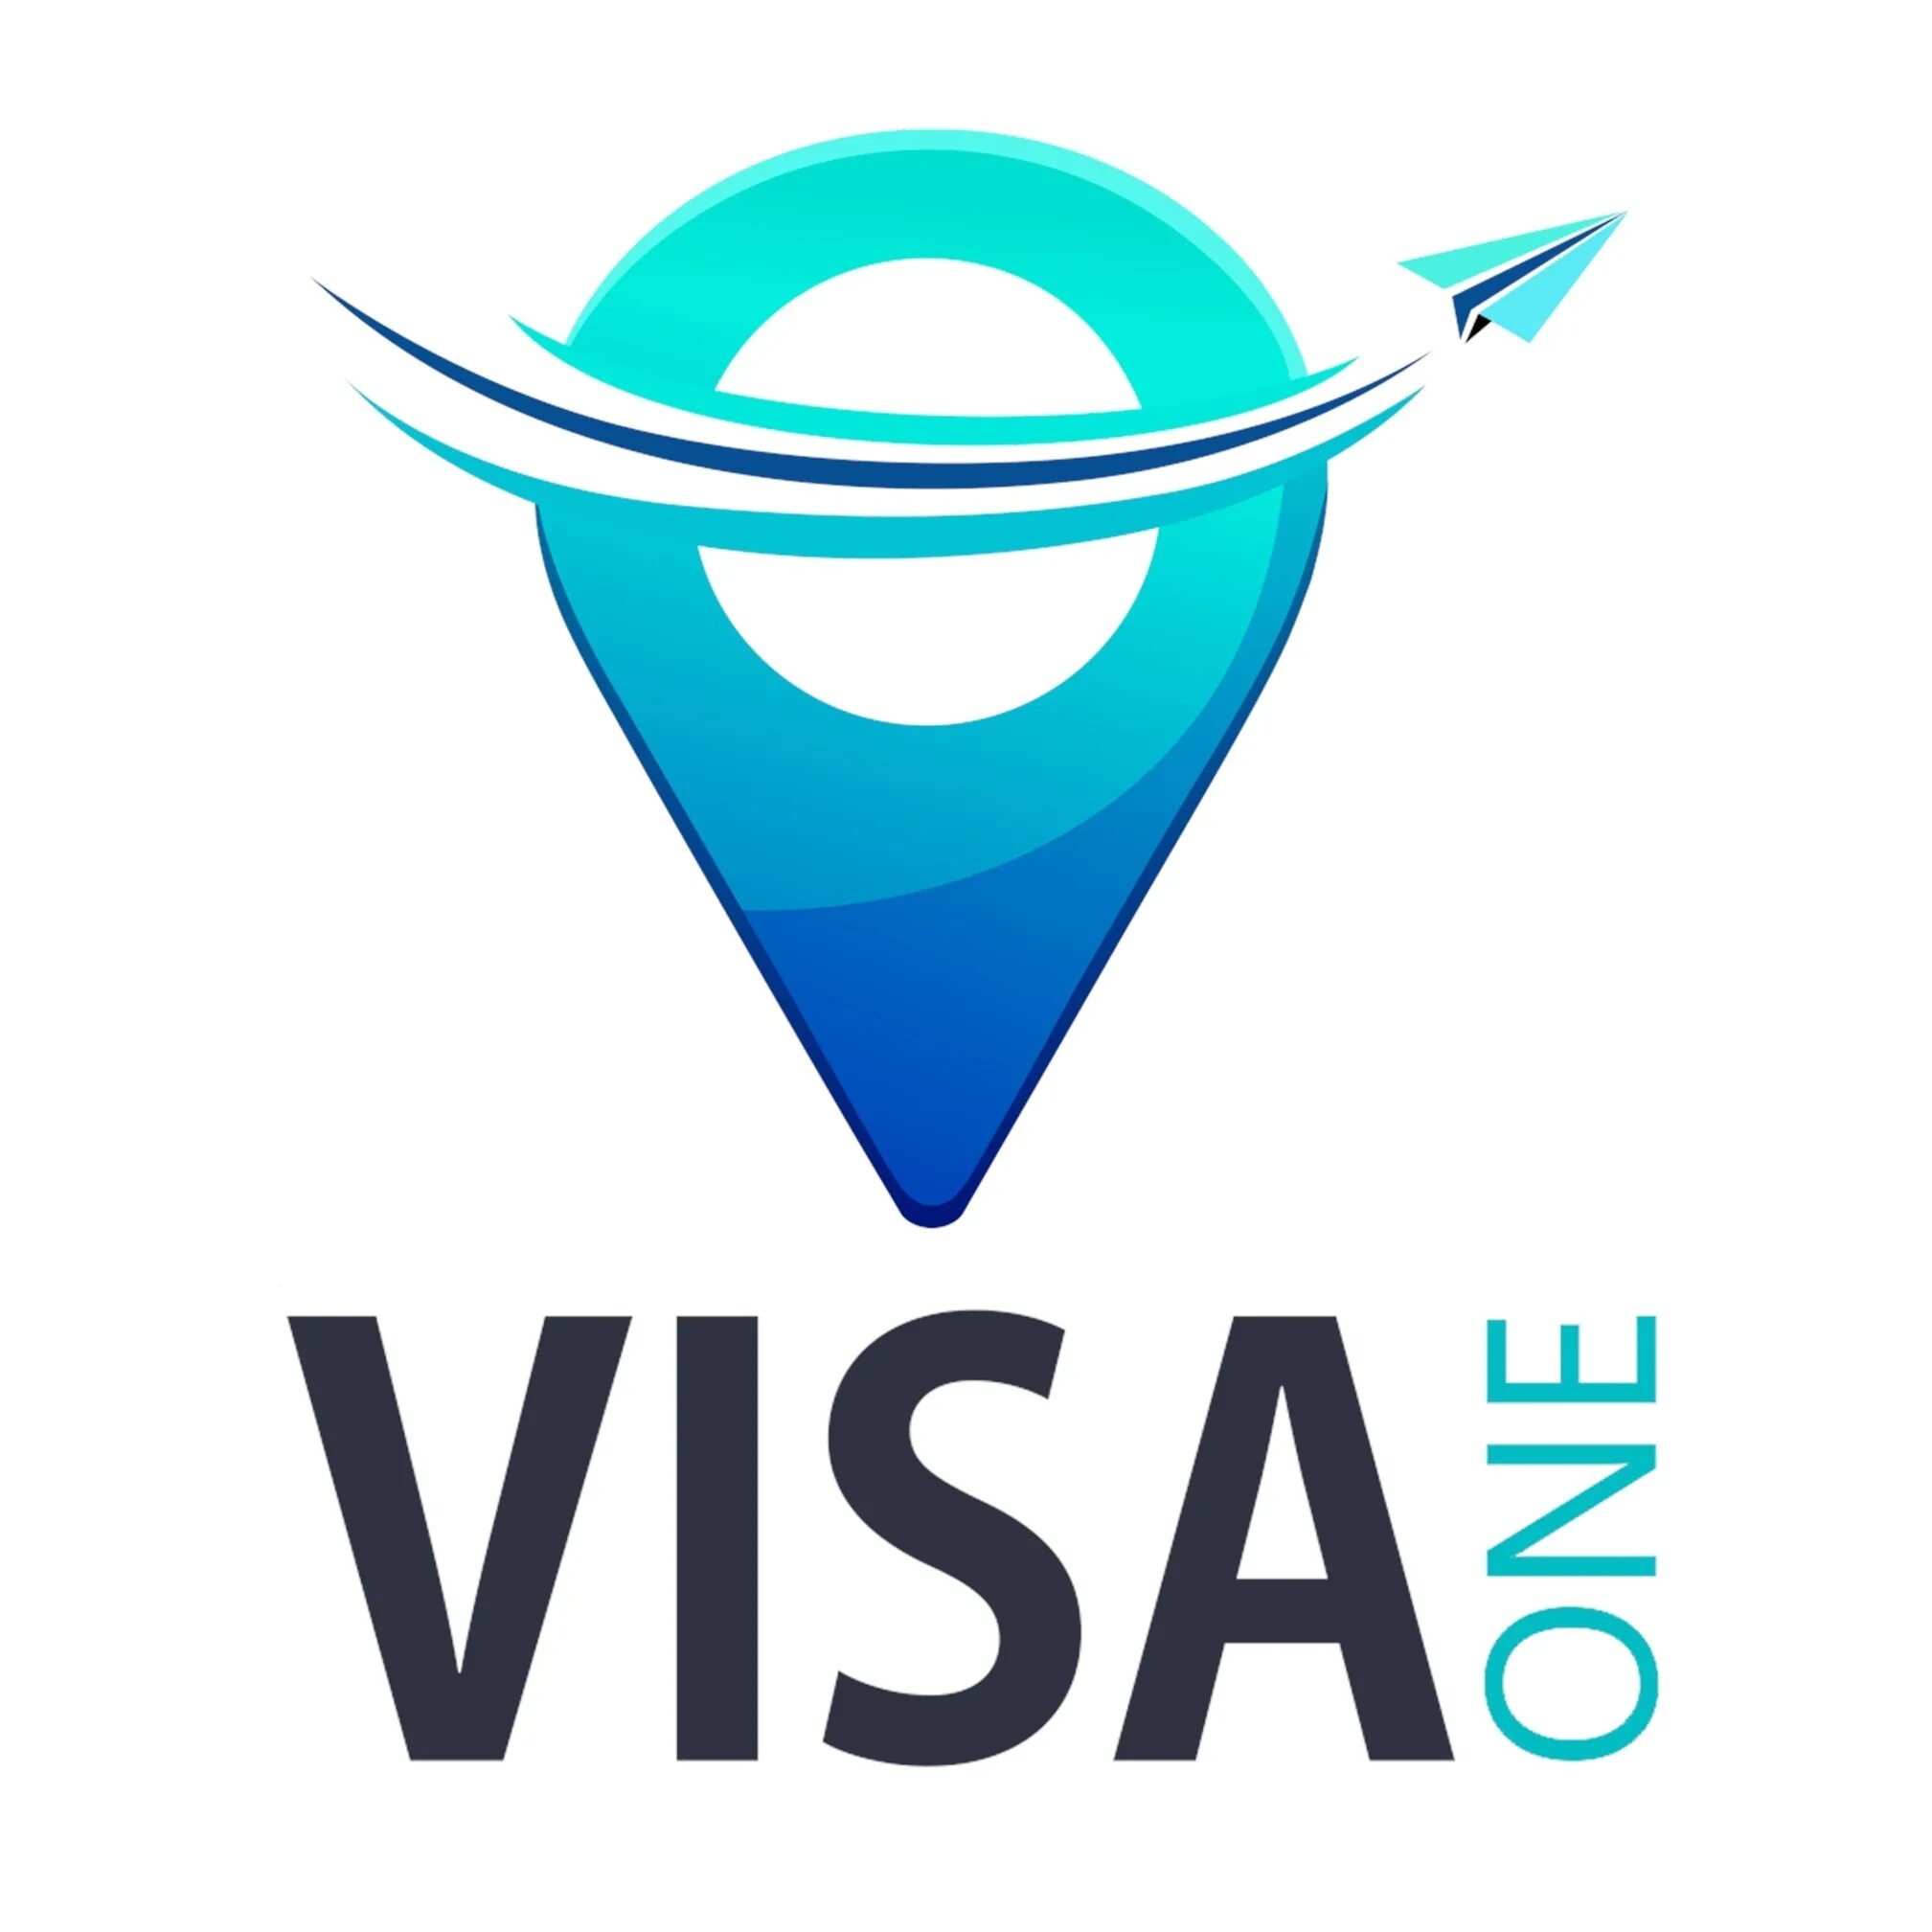 Ones visa. Visa one. Visa Center. Визовый центр логотип. My visa Center logo.